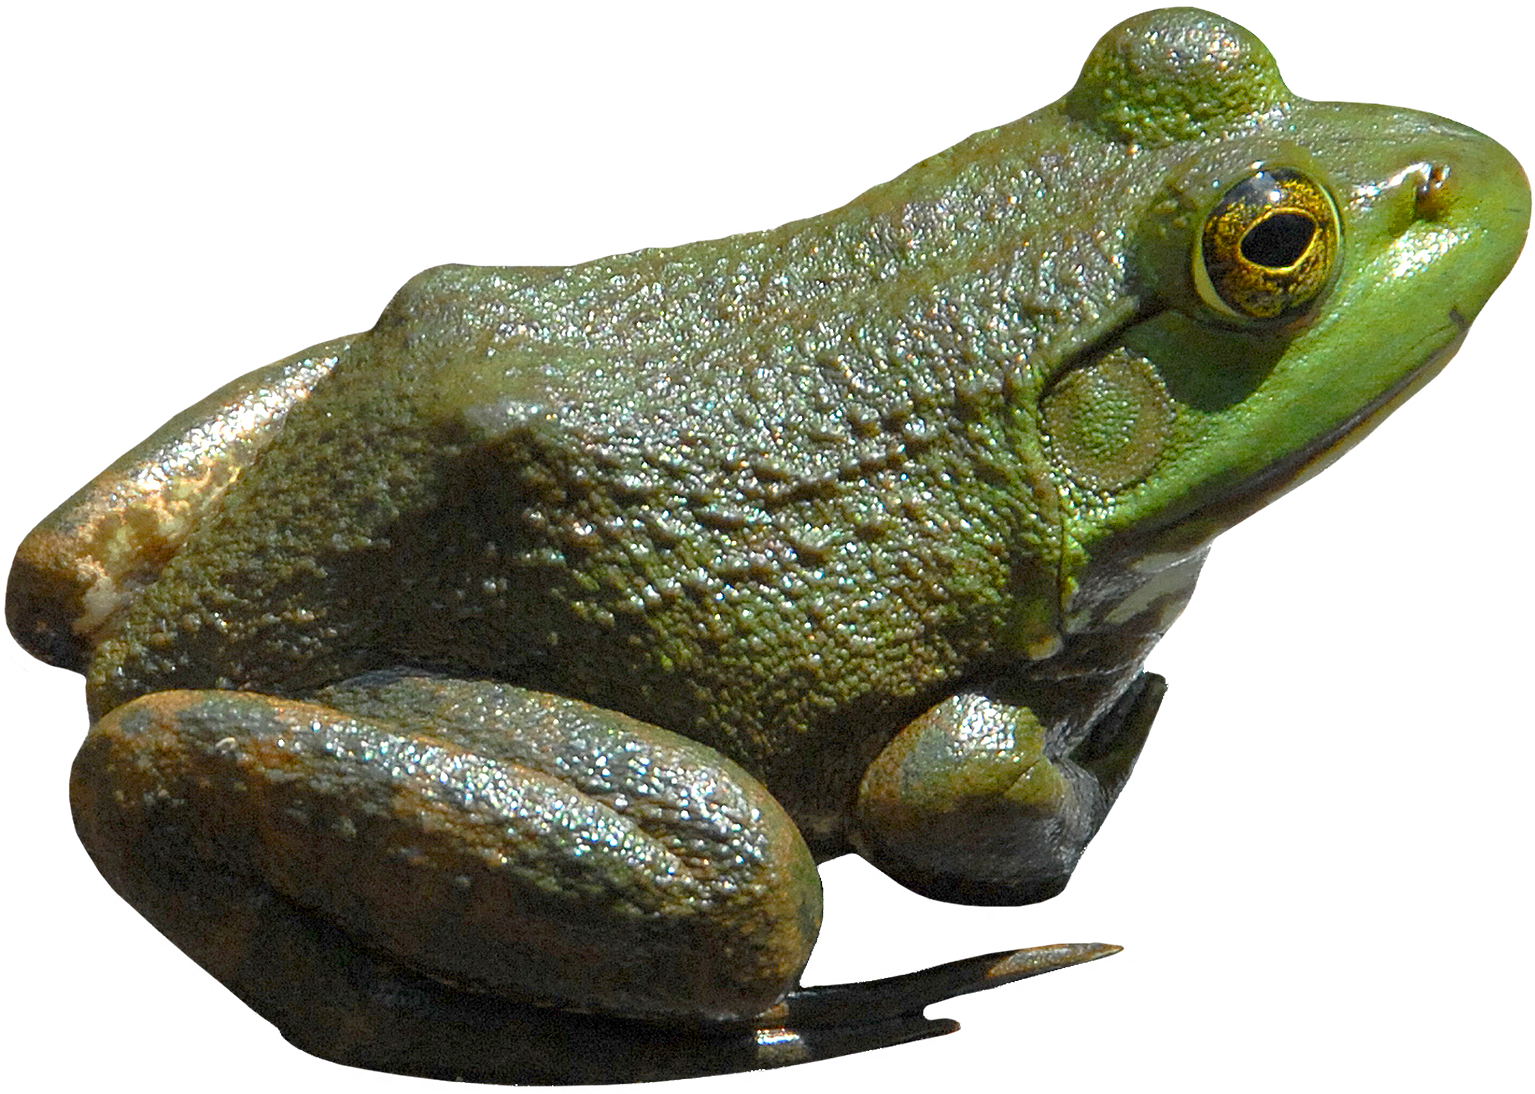 transparent frog